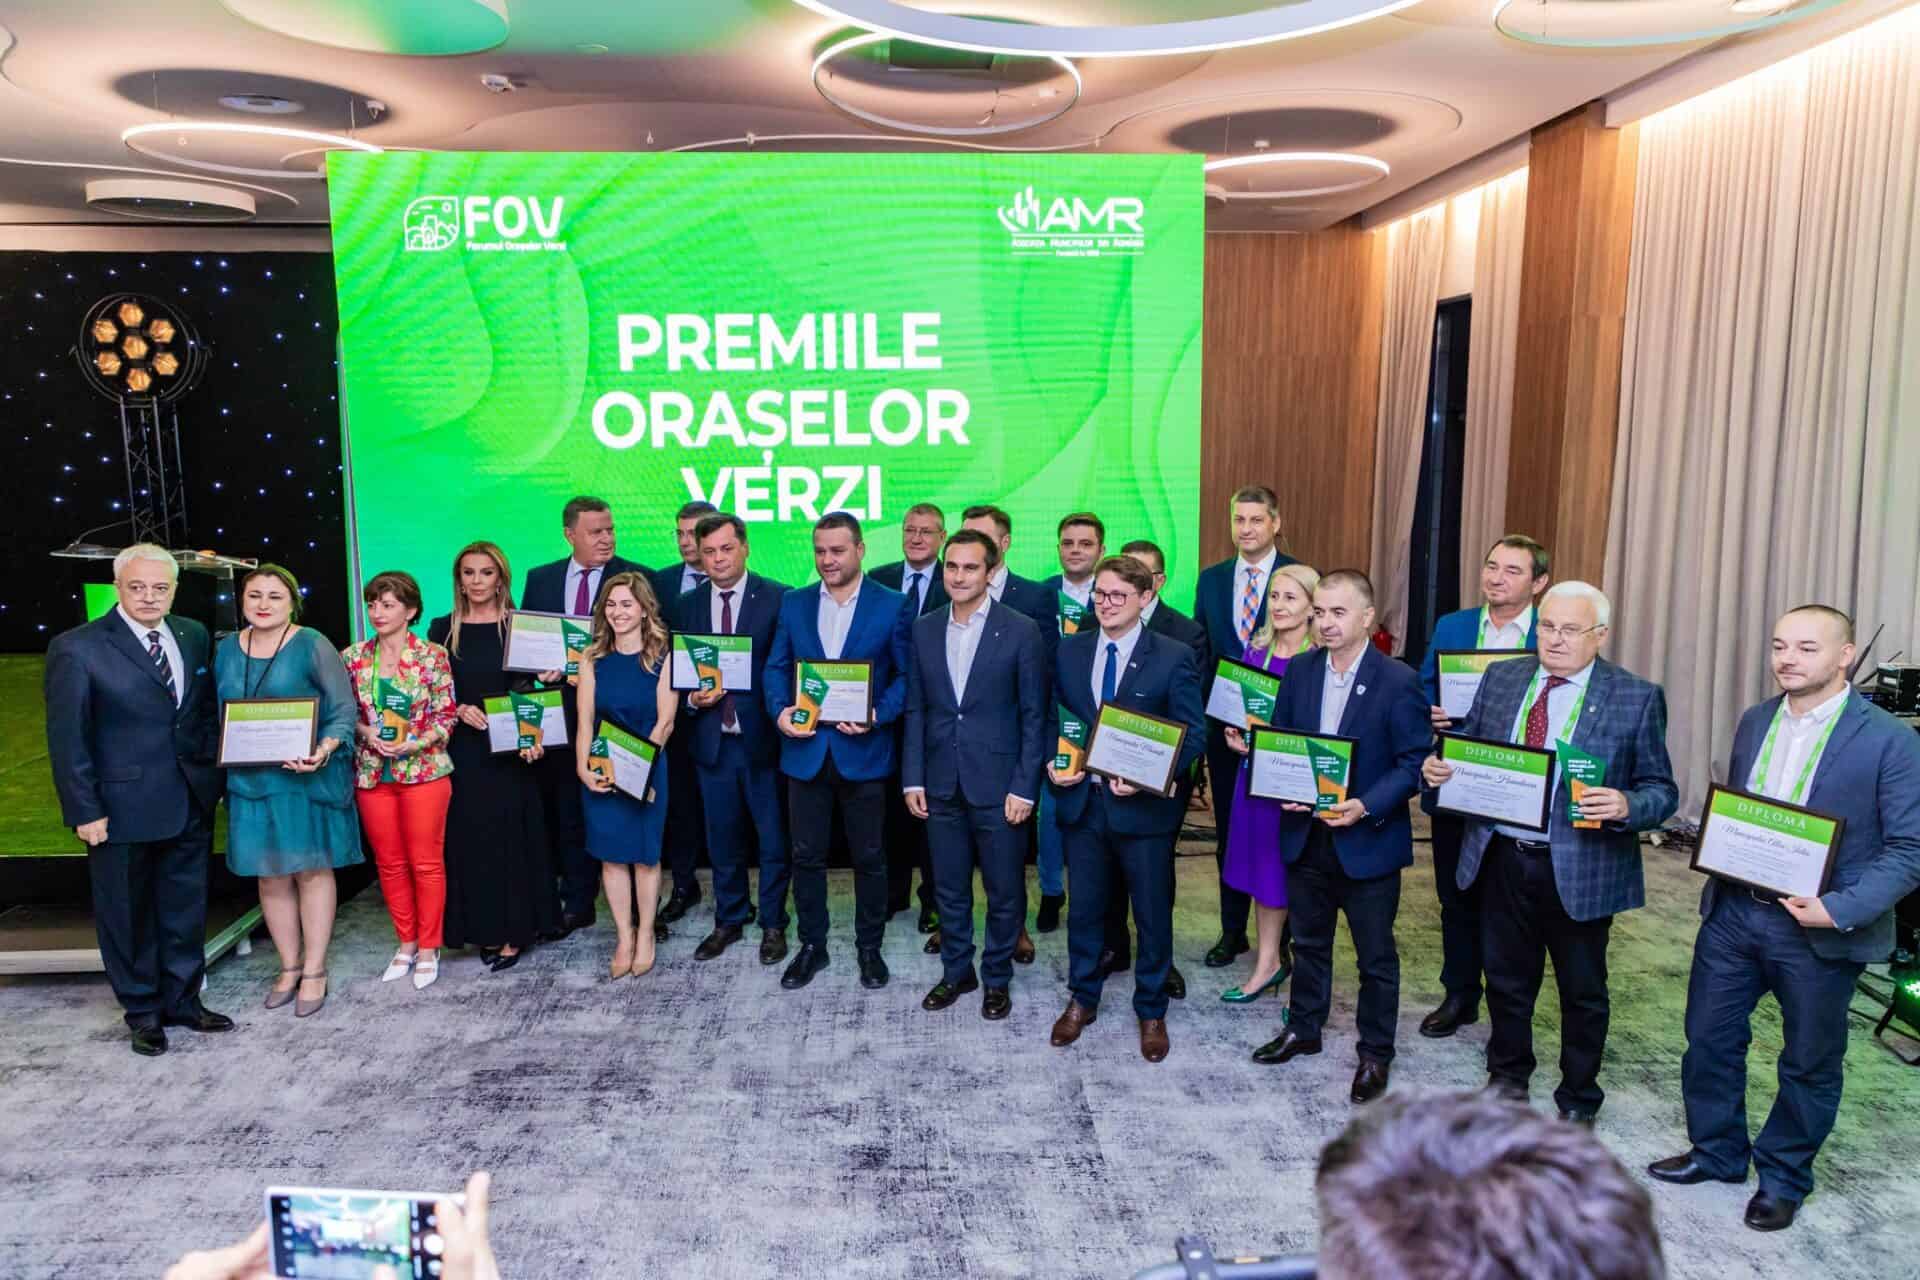 Premiile orașelor verzi Sursă foto Facebook Primăria Municipiului Sibiu